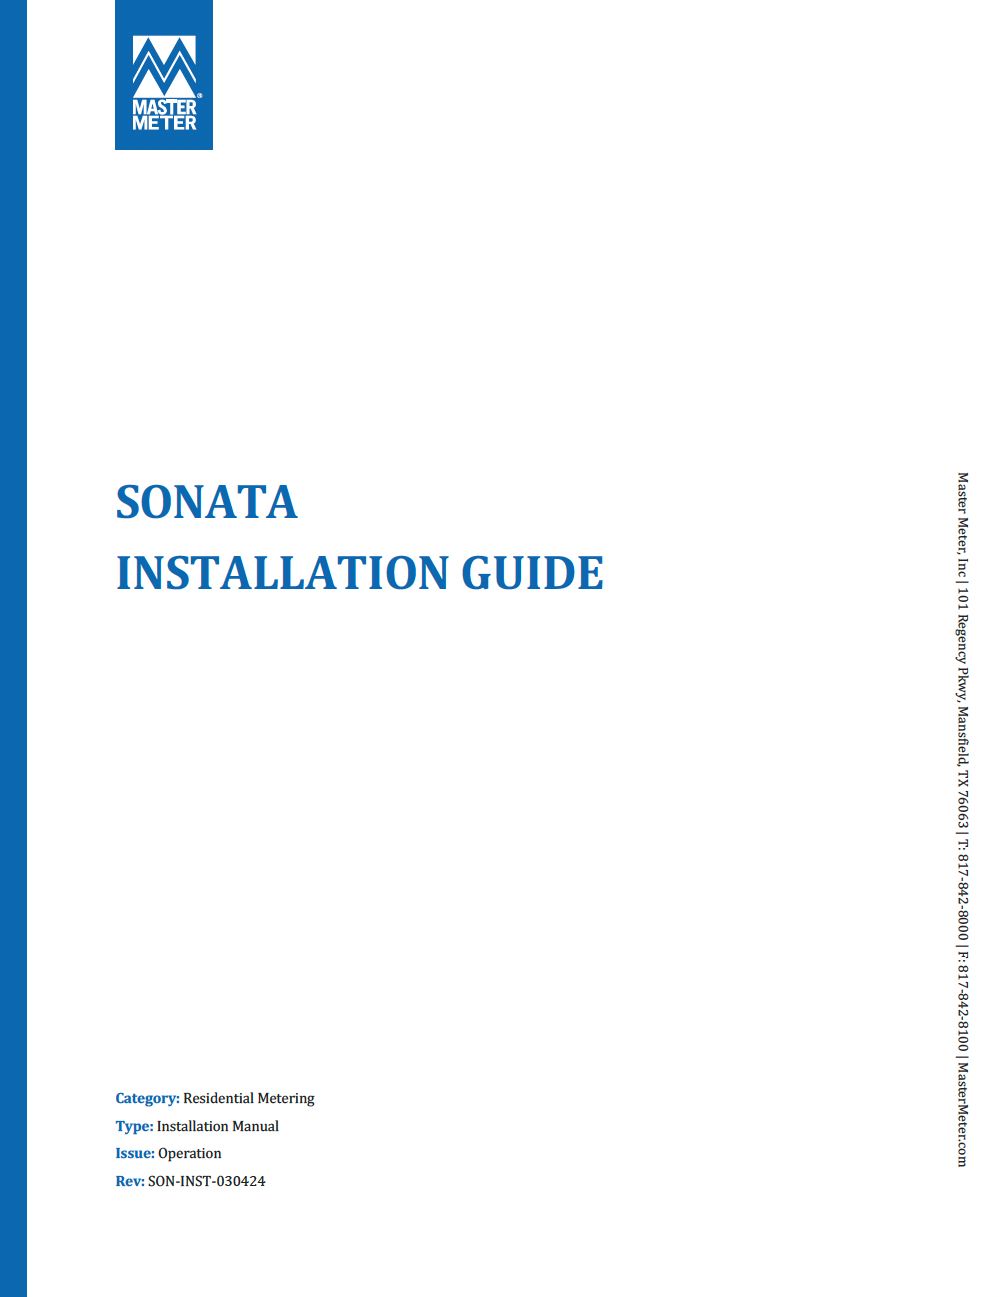 Sonata Installation Guide